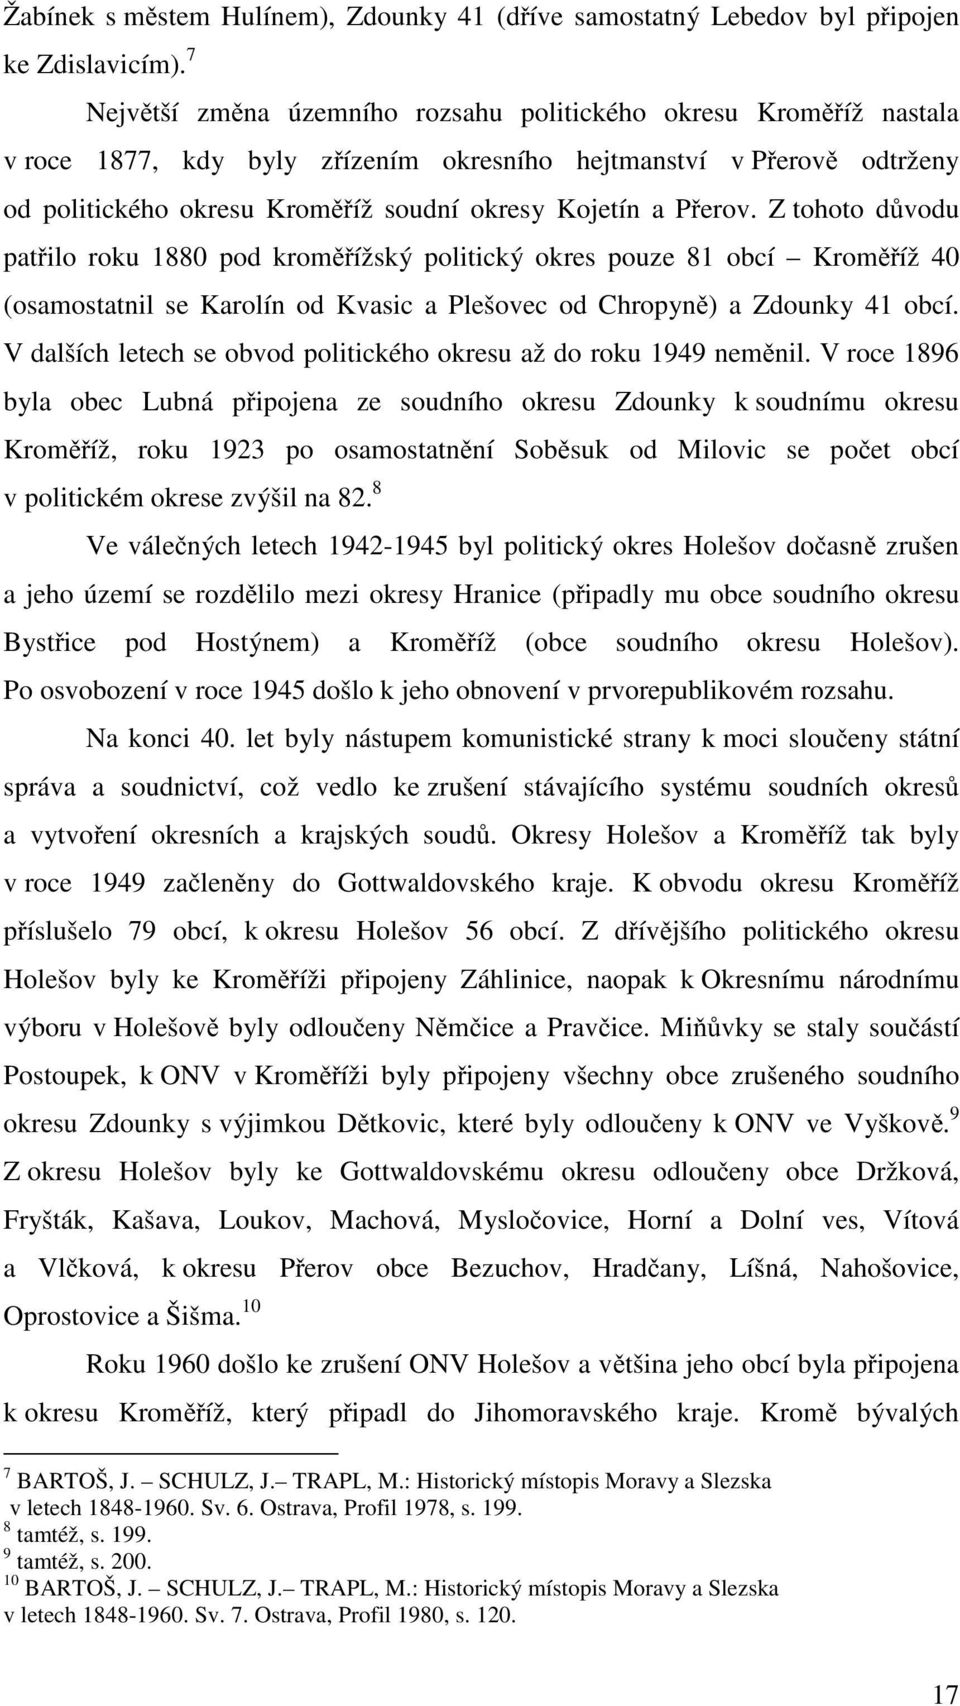 Přerov. Z tohoto důvodu patřilo roku 1880 pod kroměřížský politický okres pouze 81 obcí Kroměříž 40 (osamostatnil se Karolín od Kvasic a Plešovec od Chropyně) a Zdounky 41 obcí.